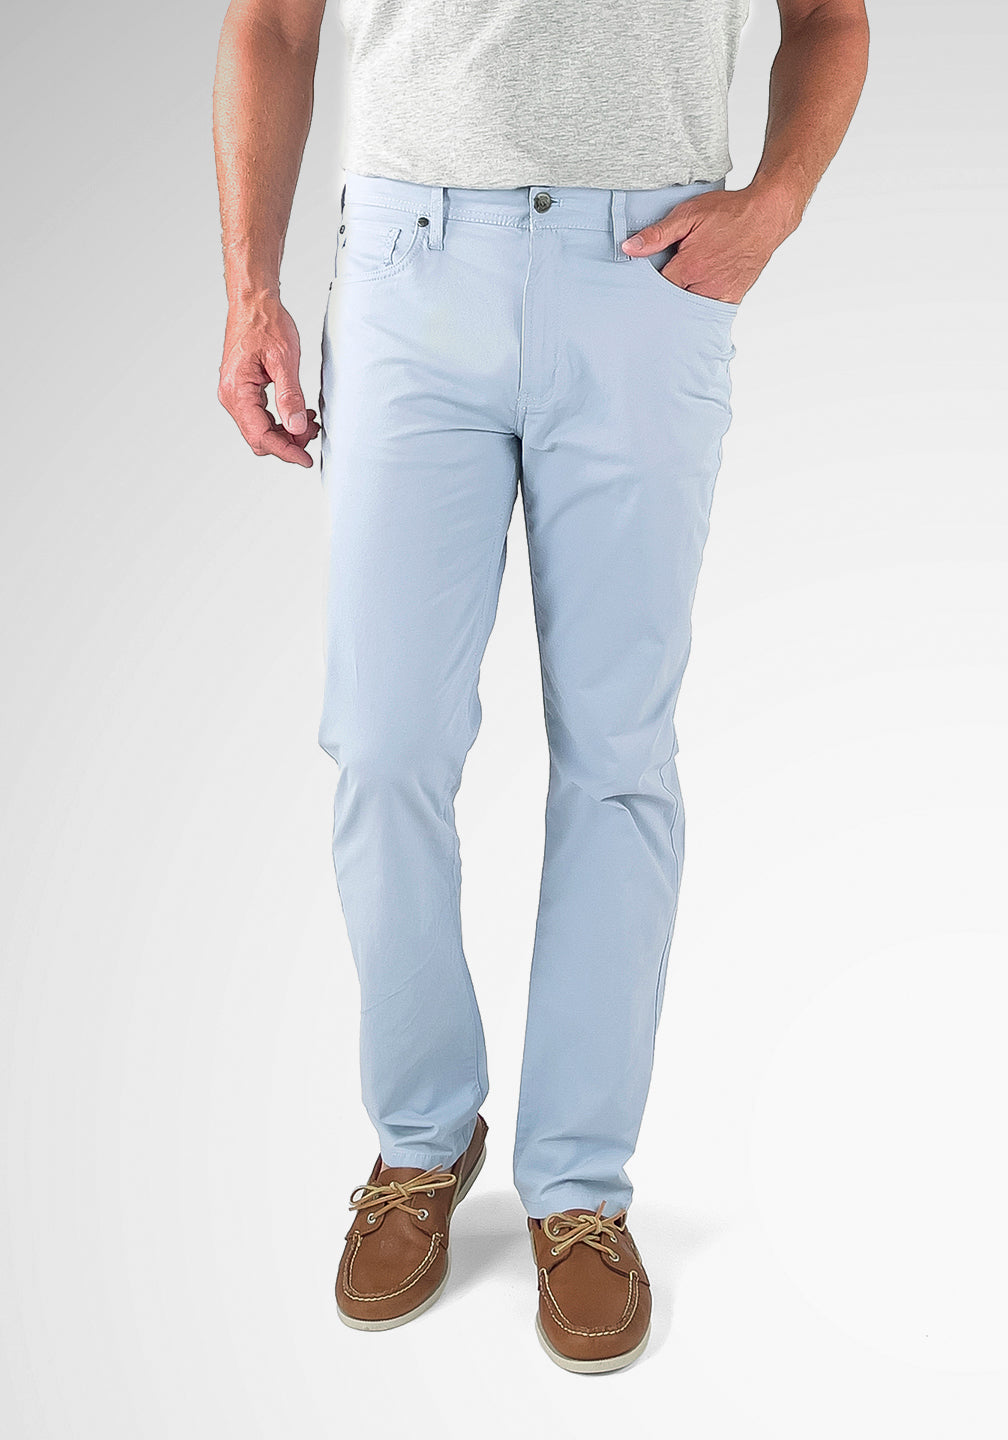 Airotec® – Tailor Vintage Cotton/Nylon Fit 5-Pocket Athletic Pants